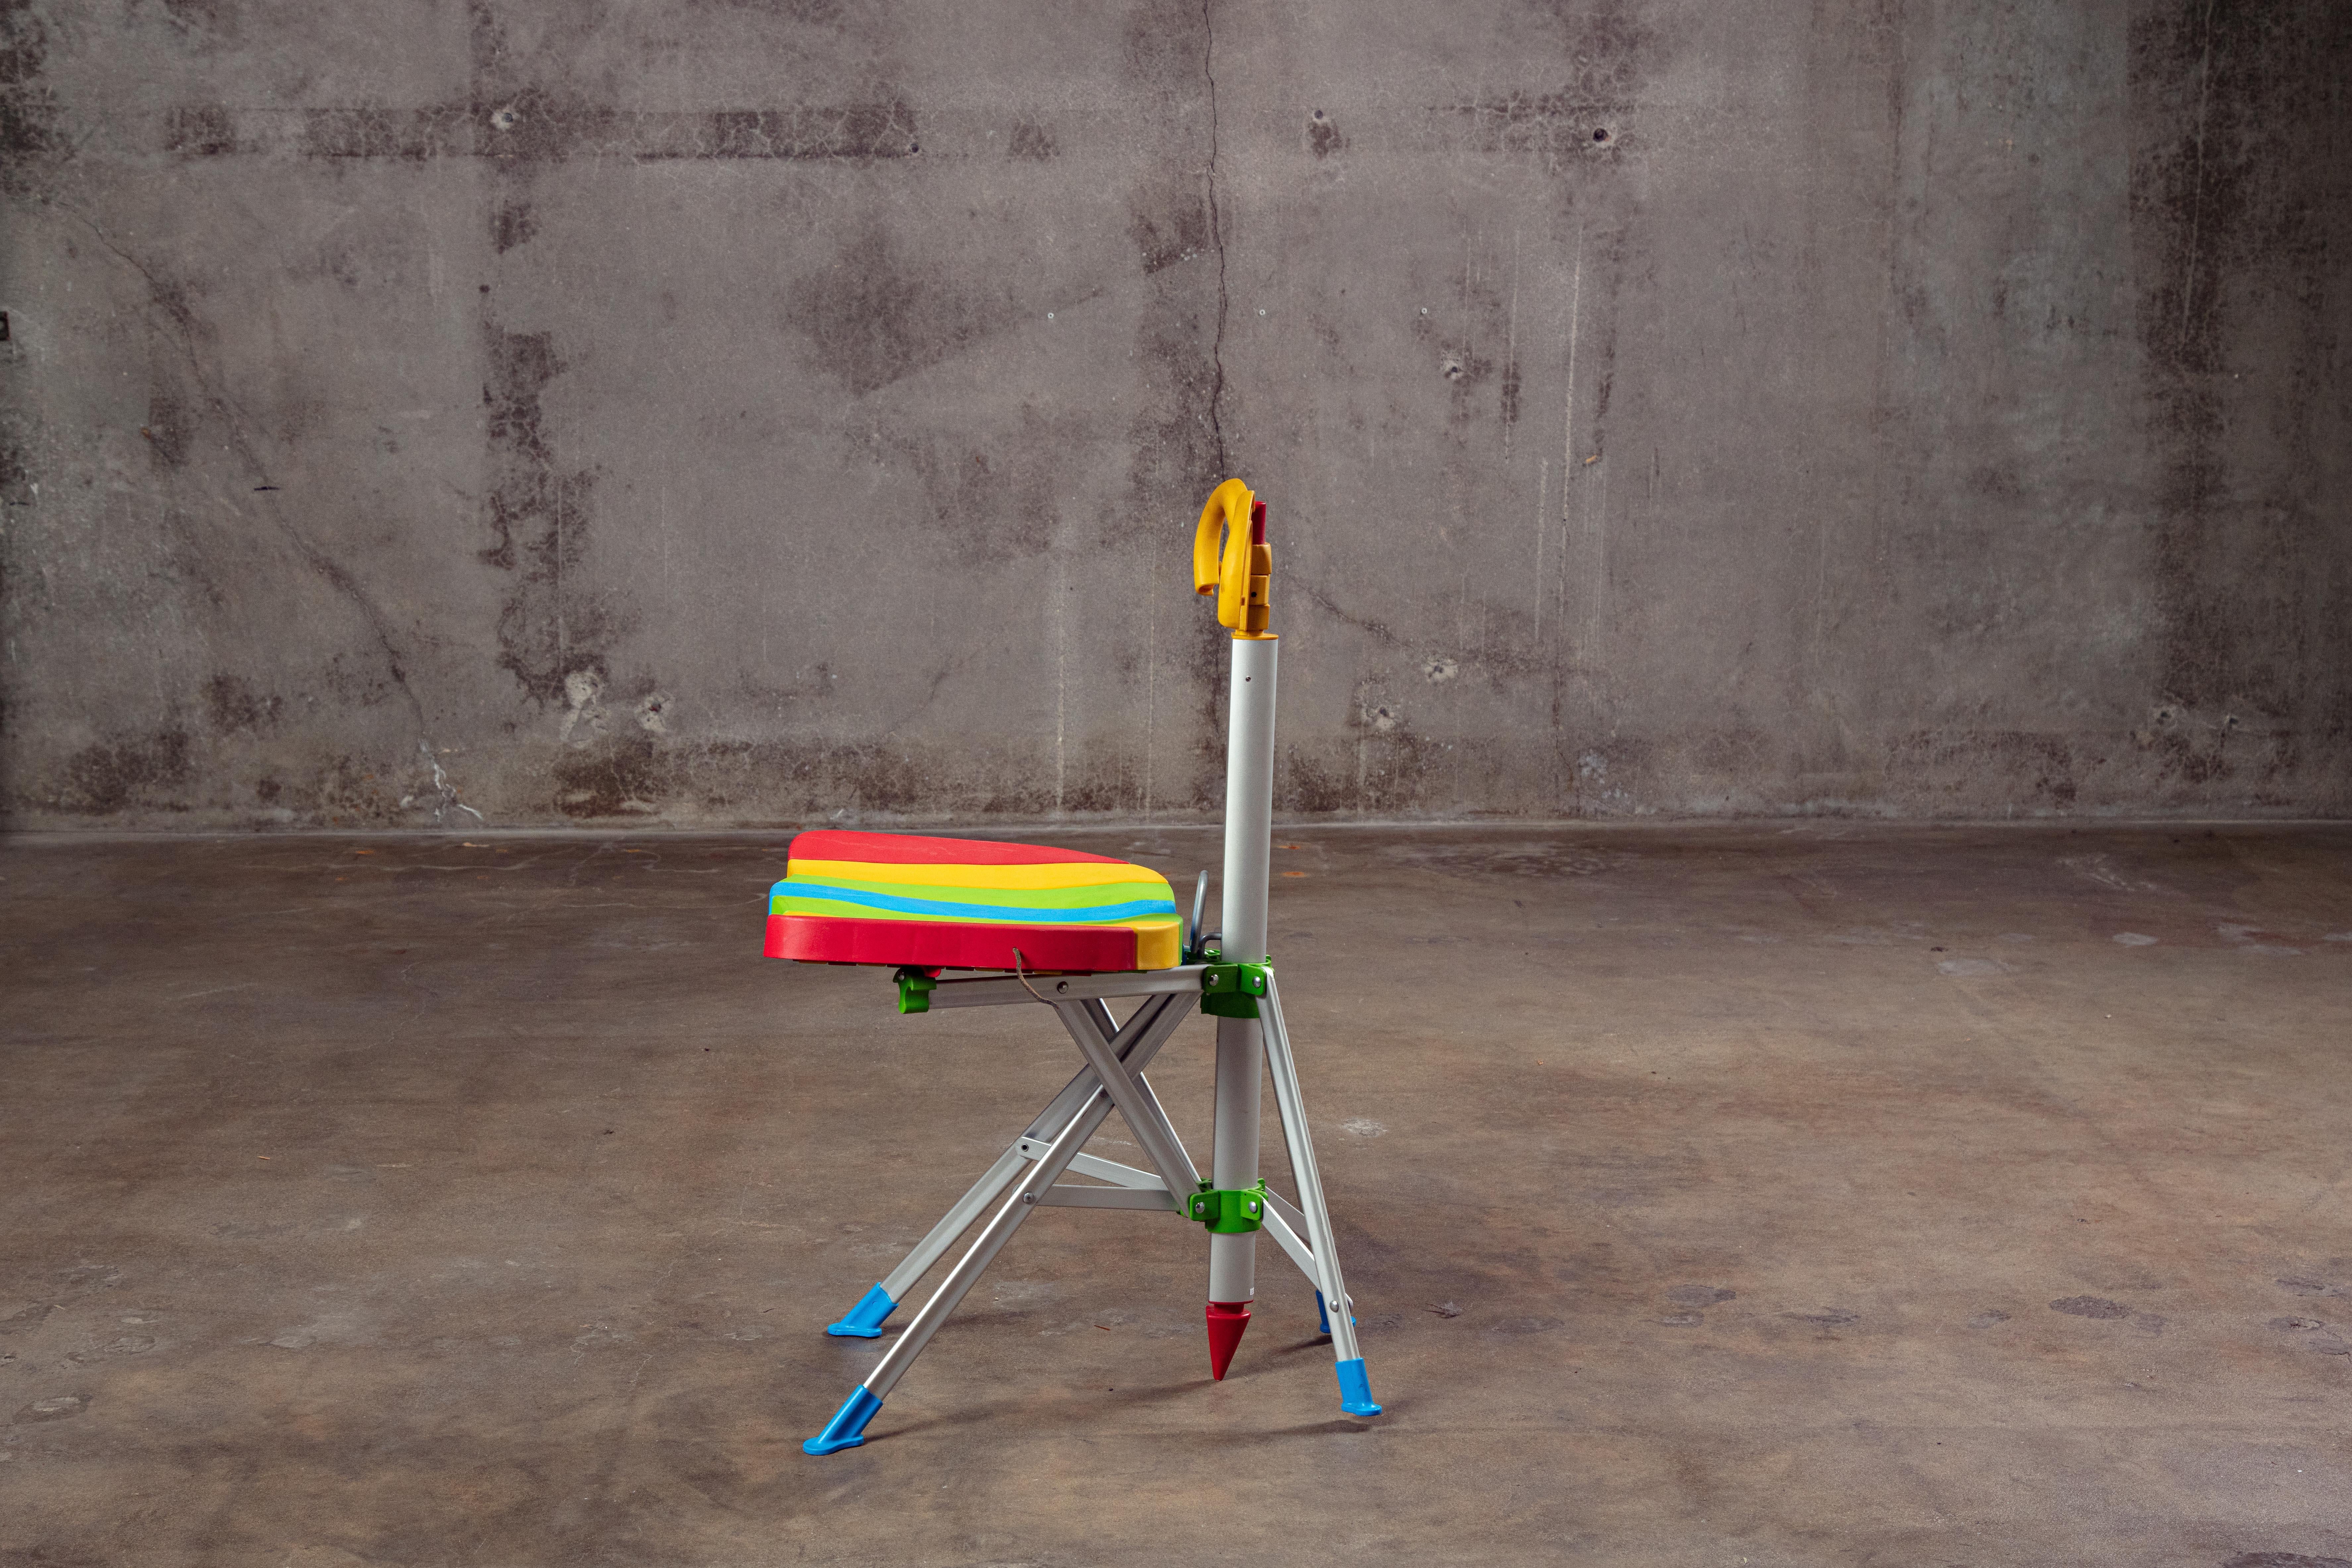 Aluminum Gaetano Pesce Zerodisegno 'Umbrella' Chair